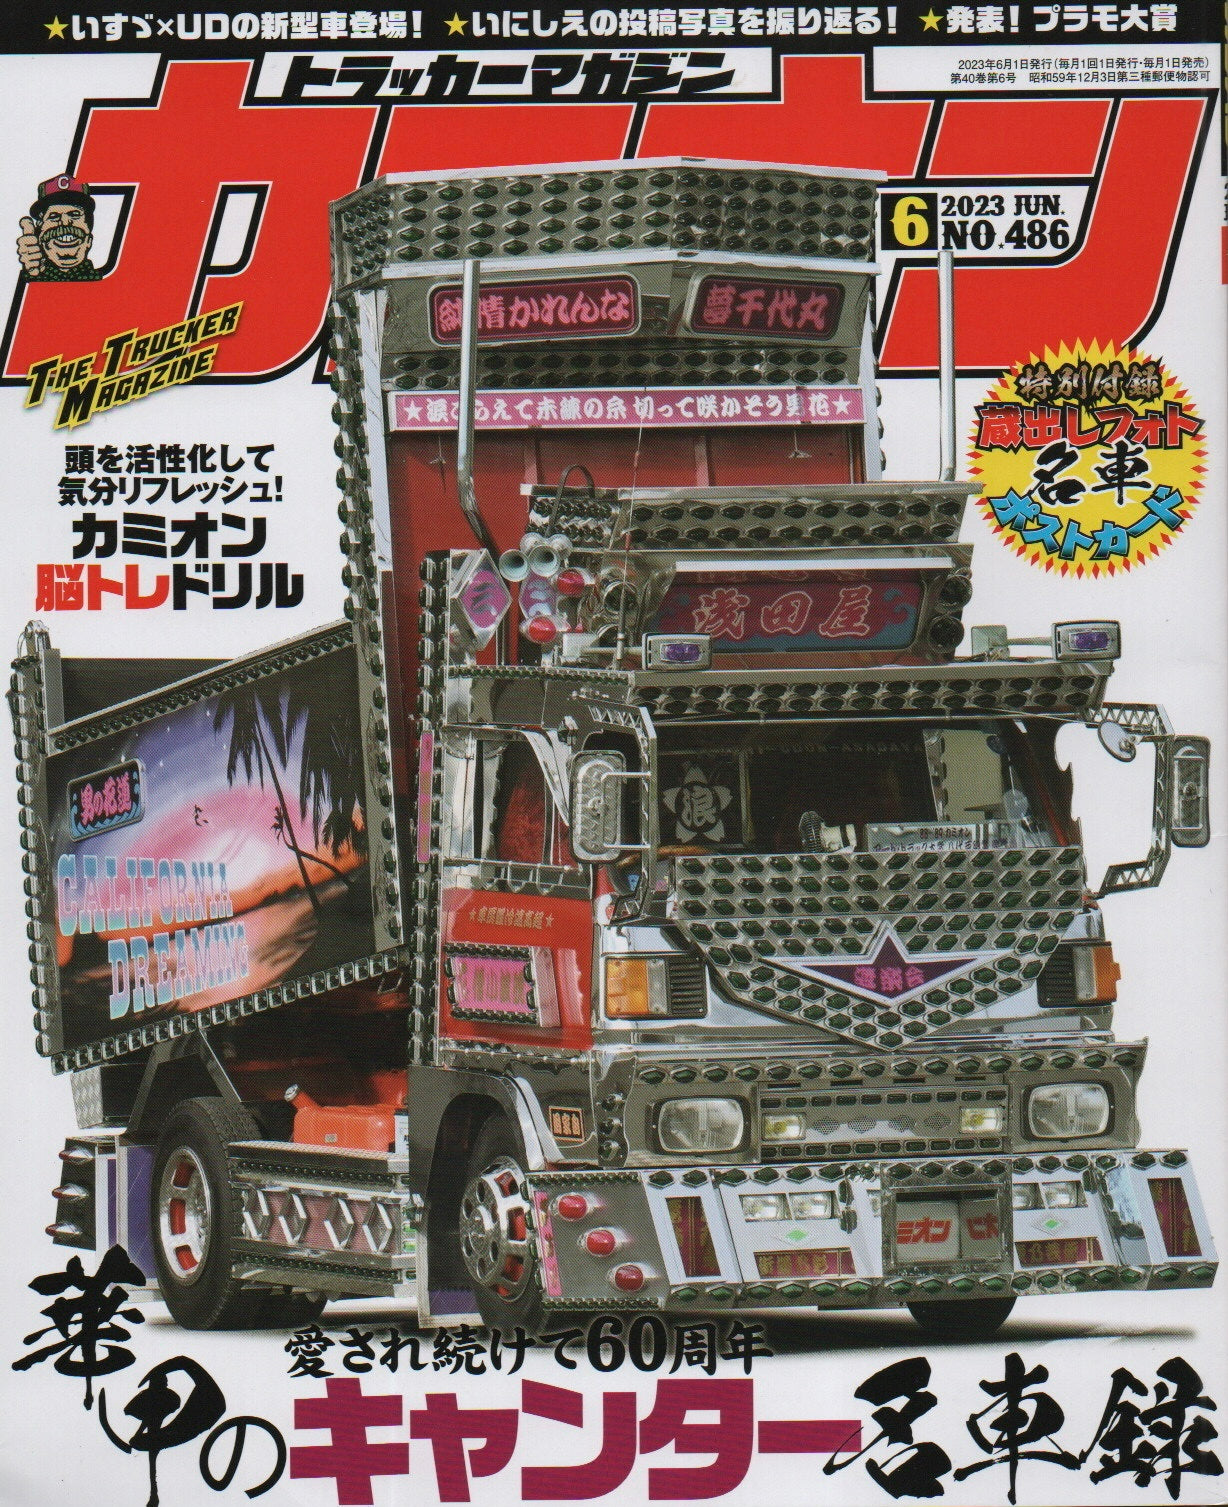 DEKOTORA Magazine (Insane JDM Trucks)